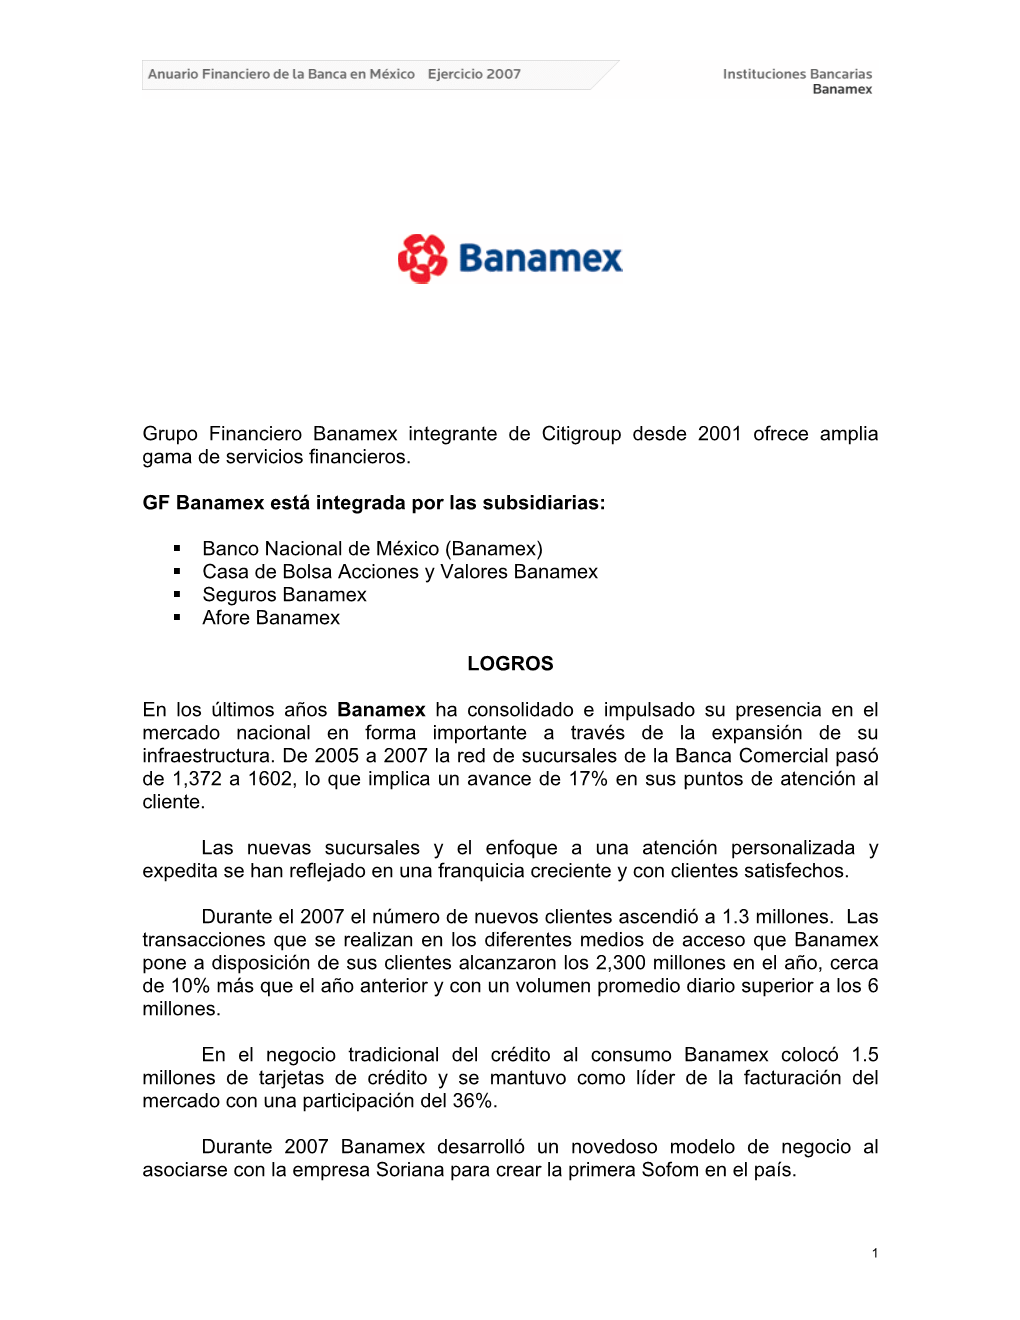 Grupo Financiero Banamex Integrante De Citigroup Desde 2001 Ofrece Amplia Gama De Servicios Financieros